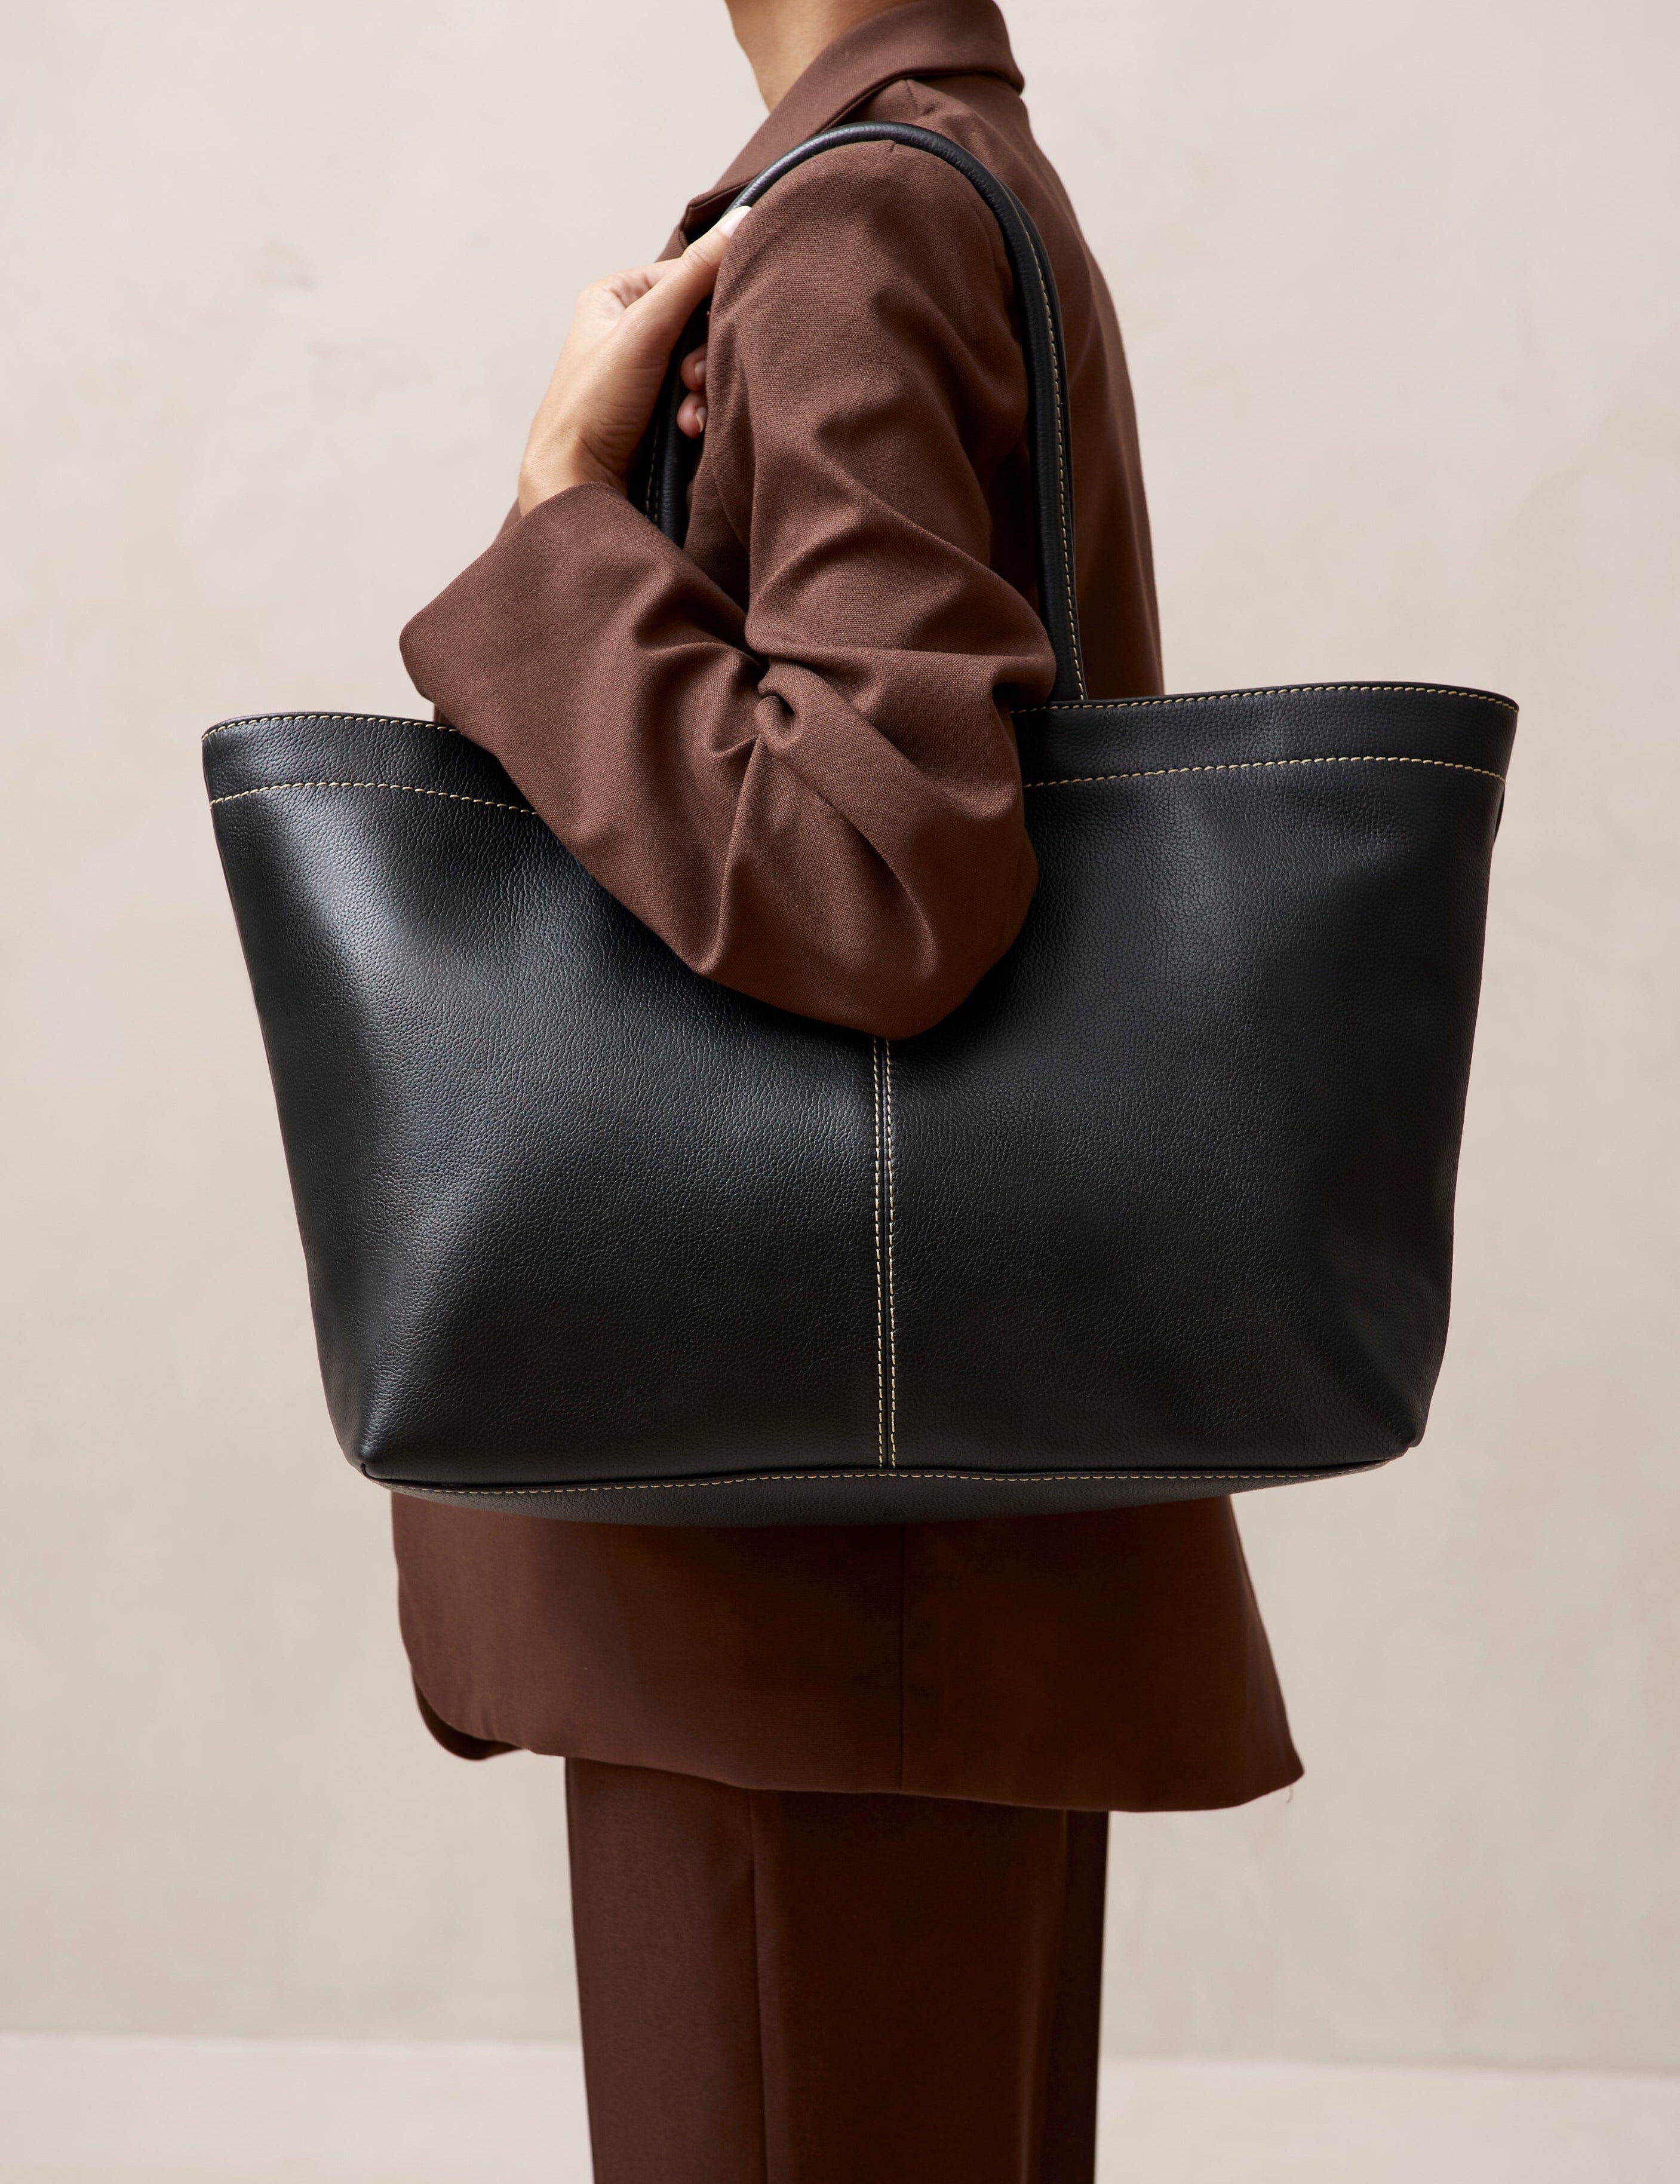 the-f-black-leather-tote-bags-handbags-alohas-101871_3000x_2e9ac63b-9408-41e3-af91-a3162a2907d0.jpg